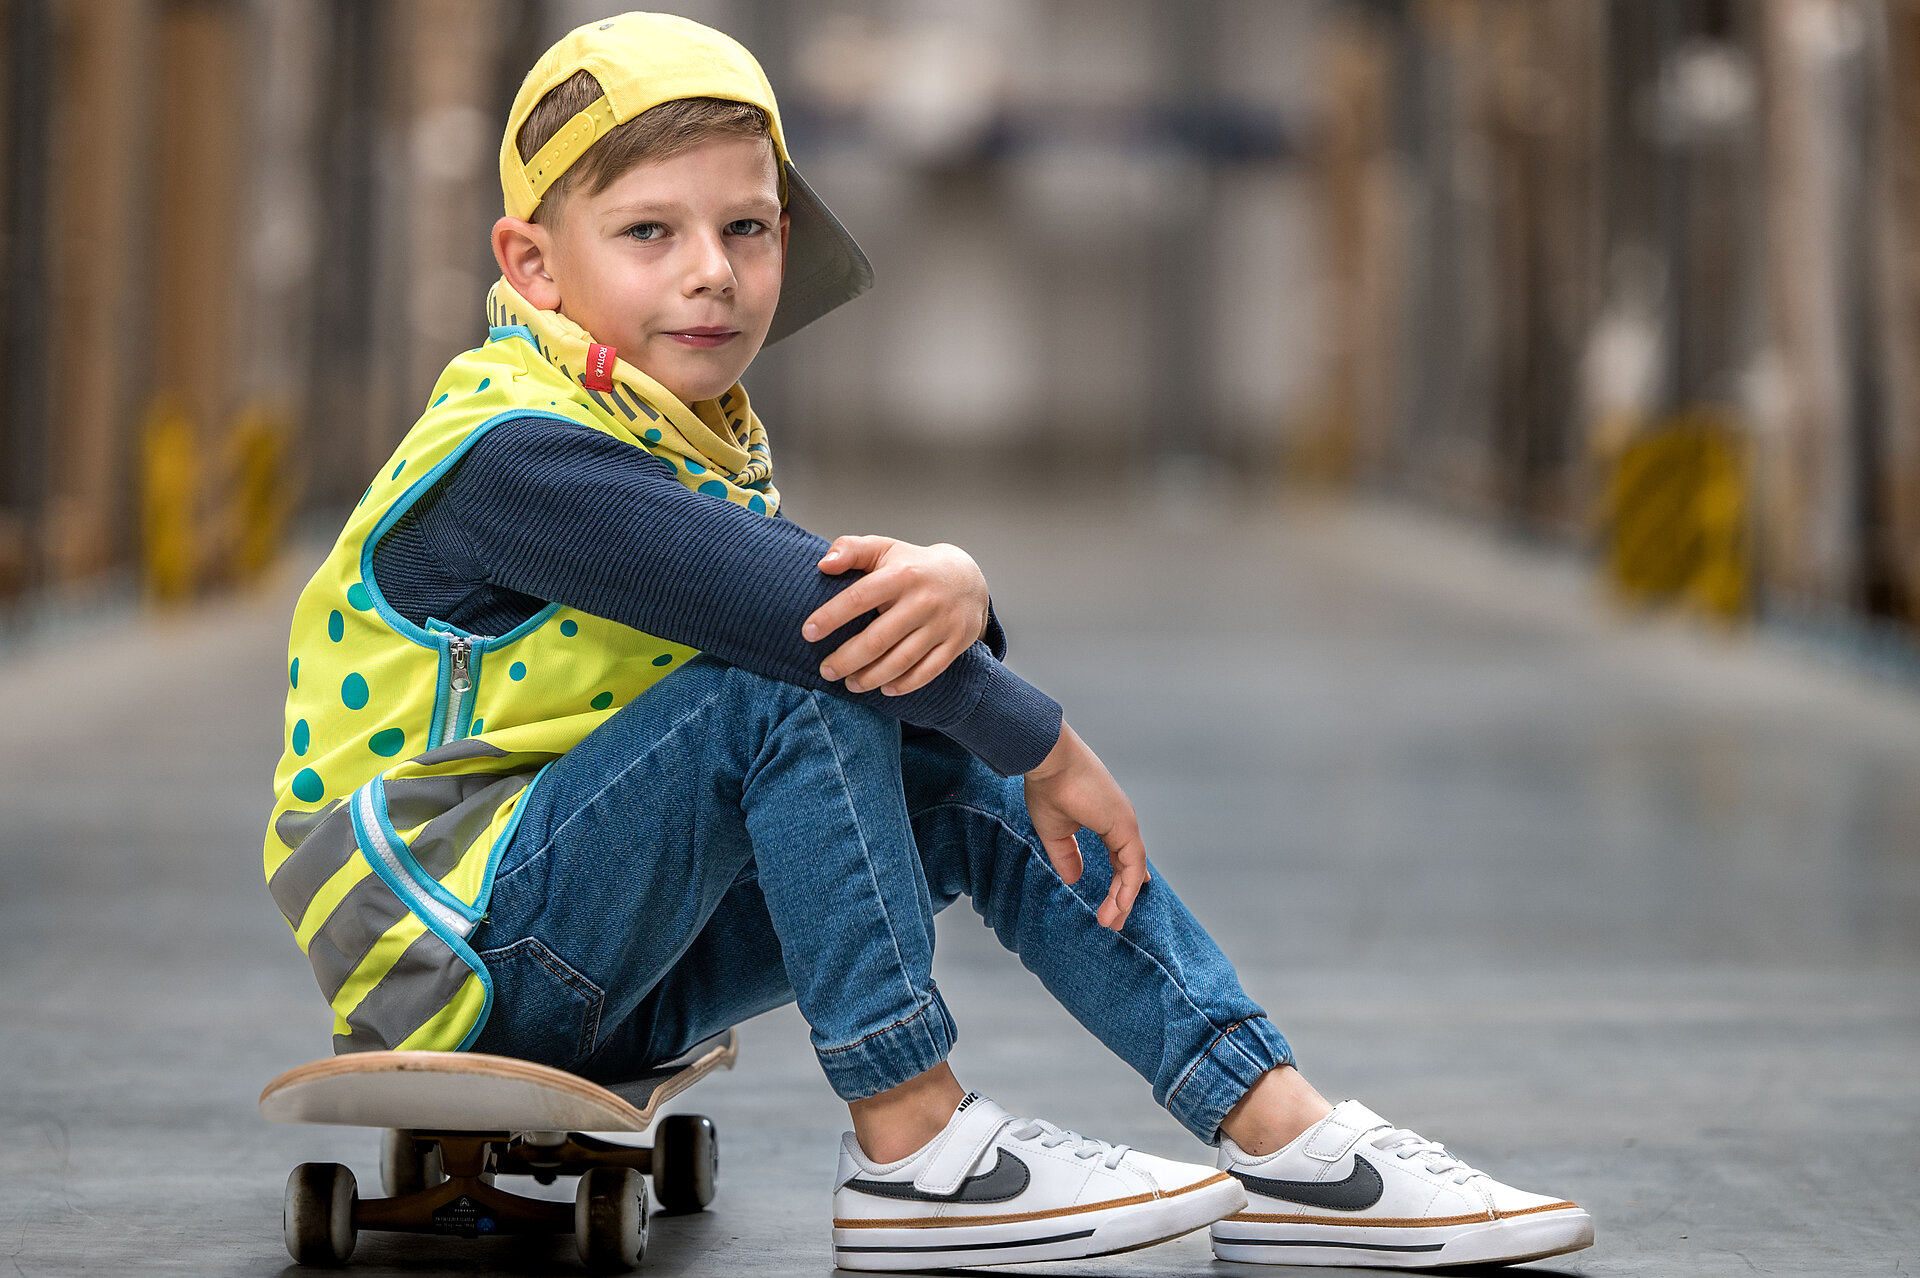 Junge mit gelber Warnweste und Basecap sitzt auf einem Skateboard